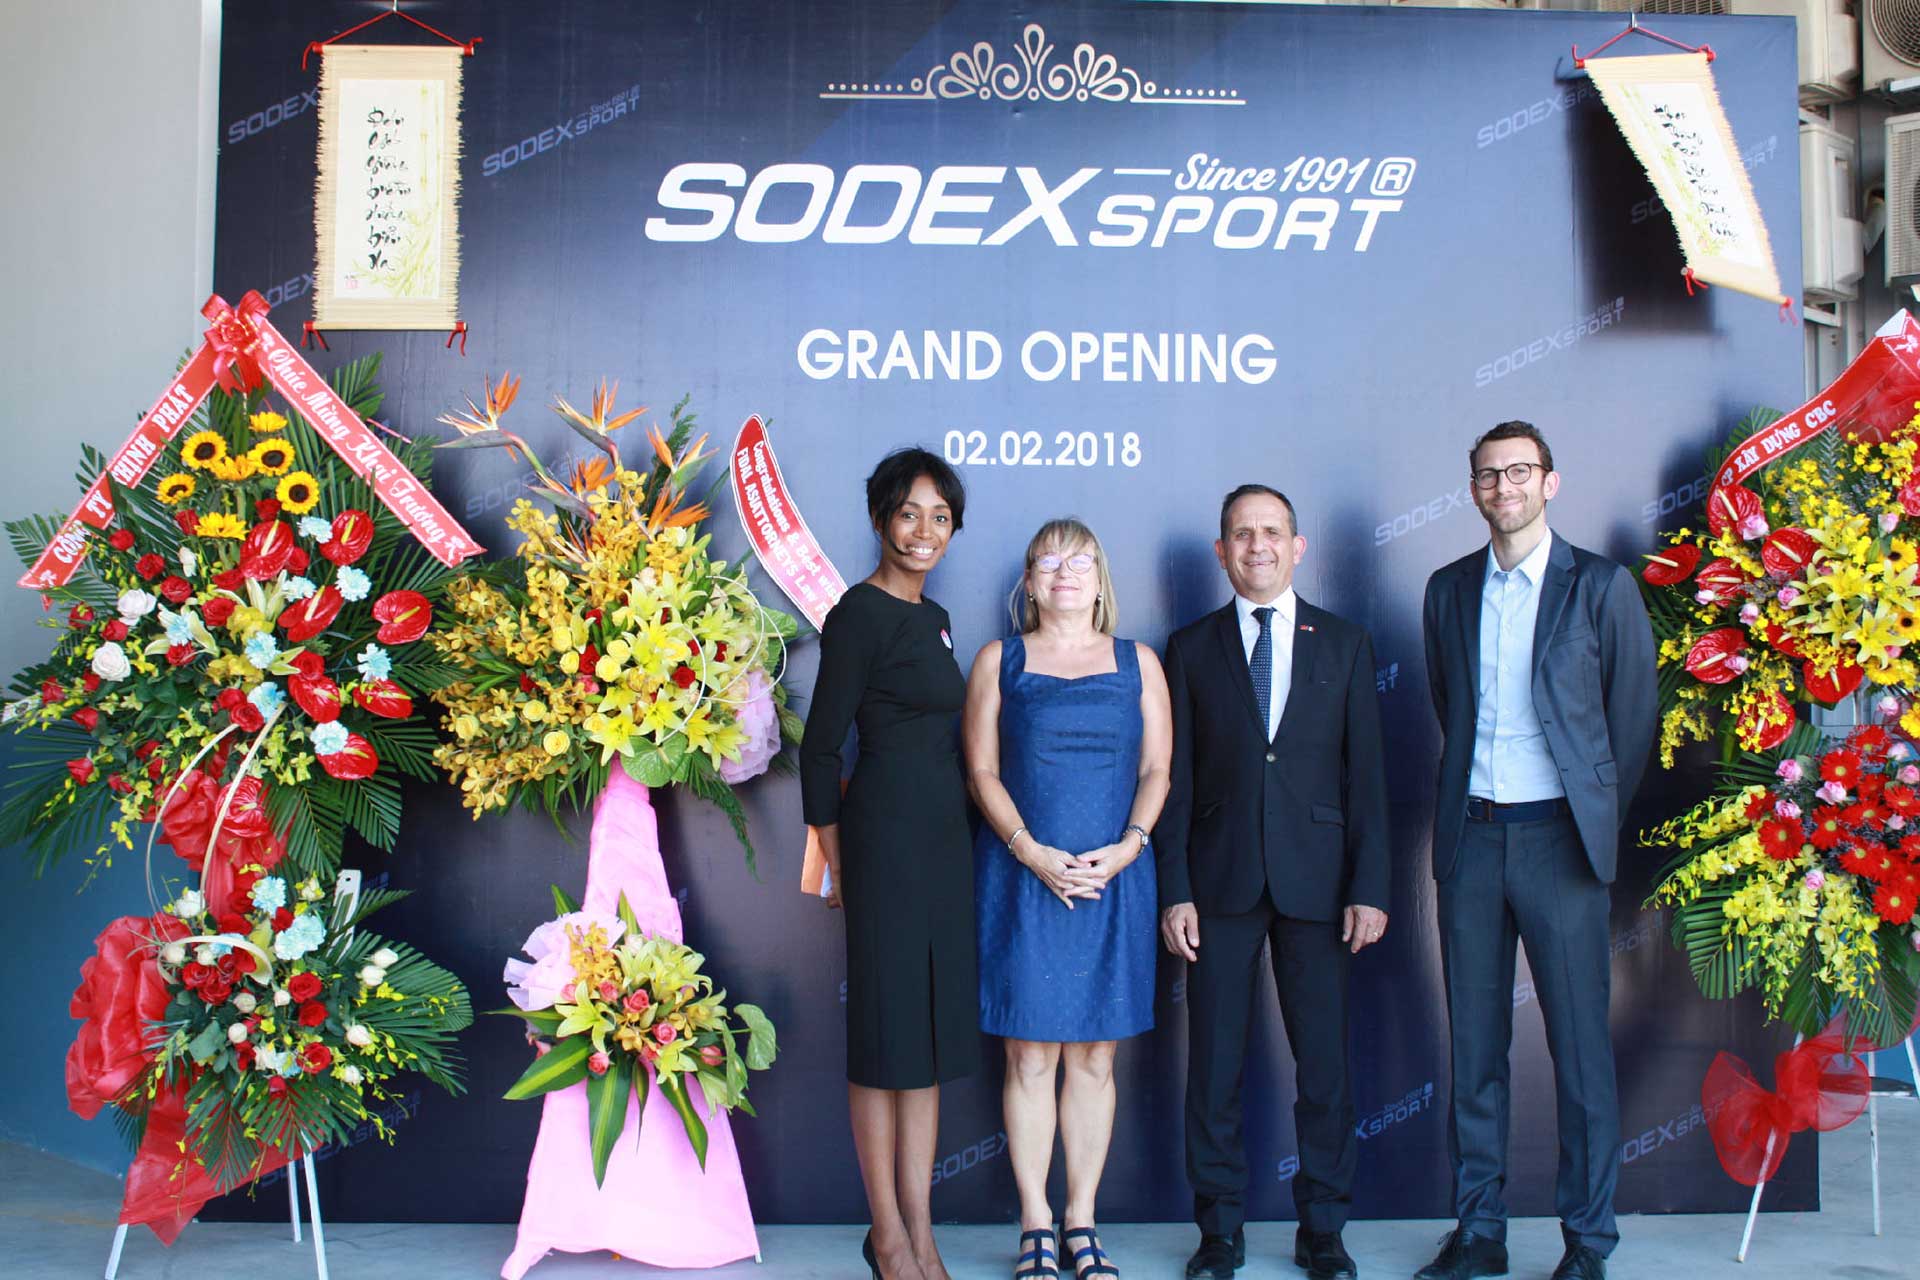 Sodex sport